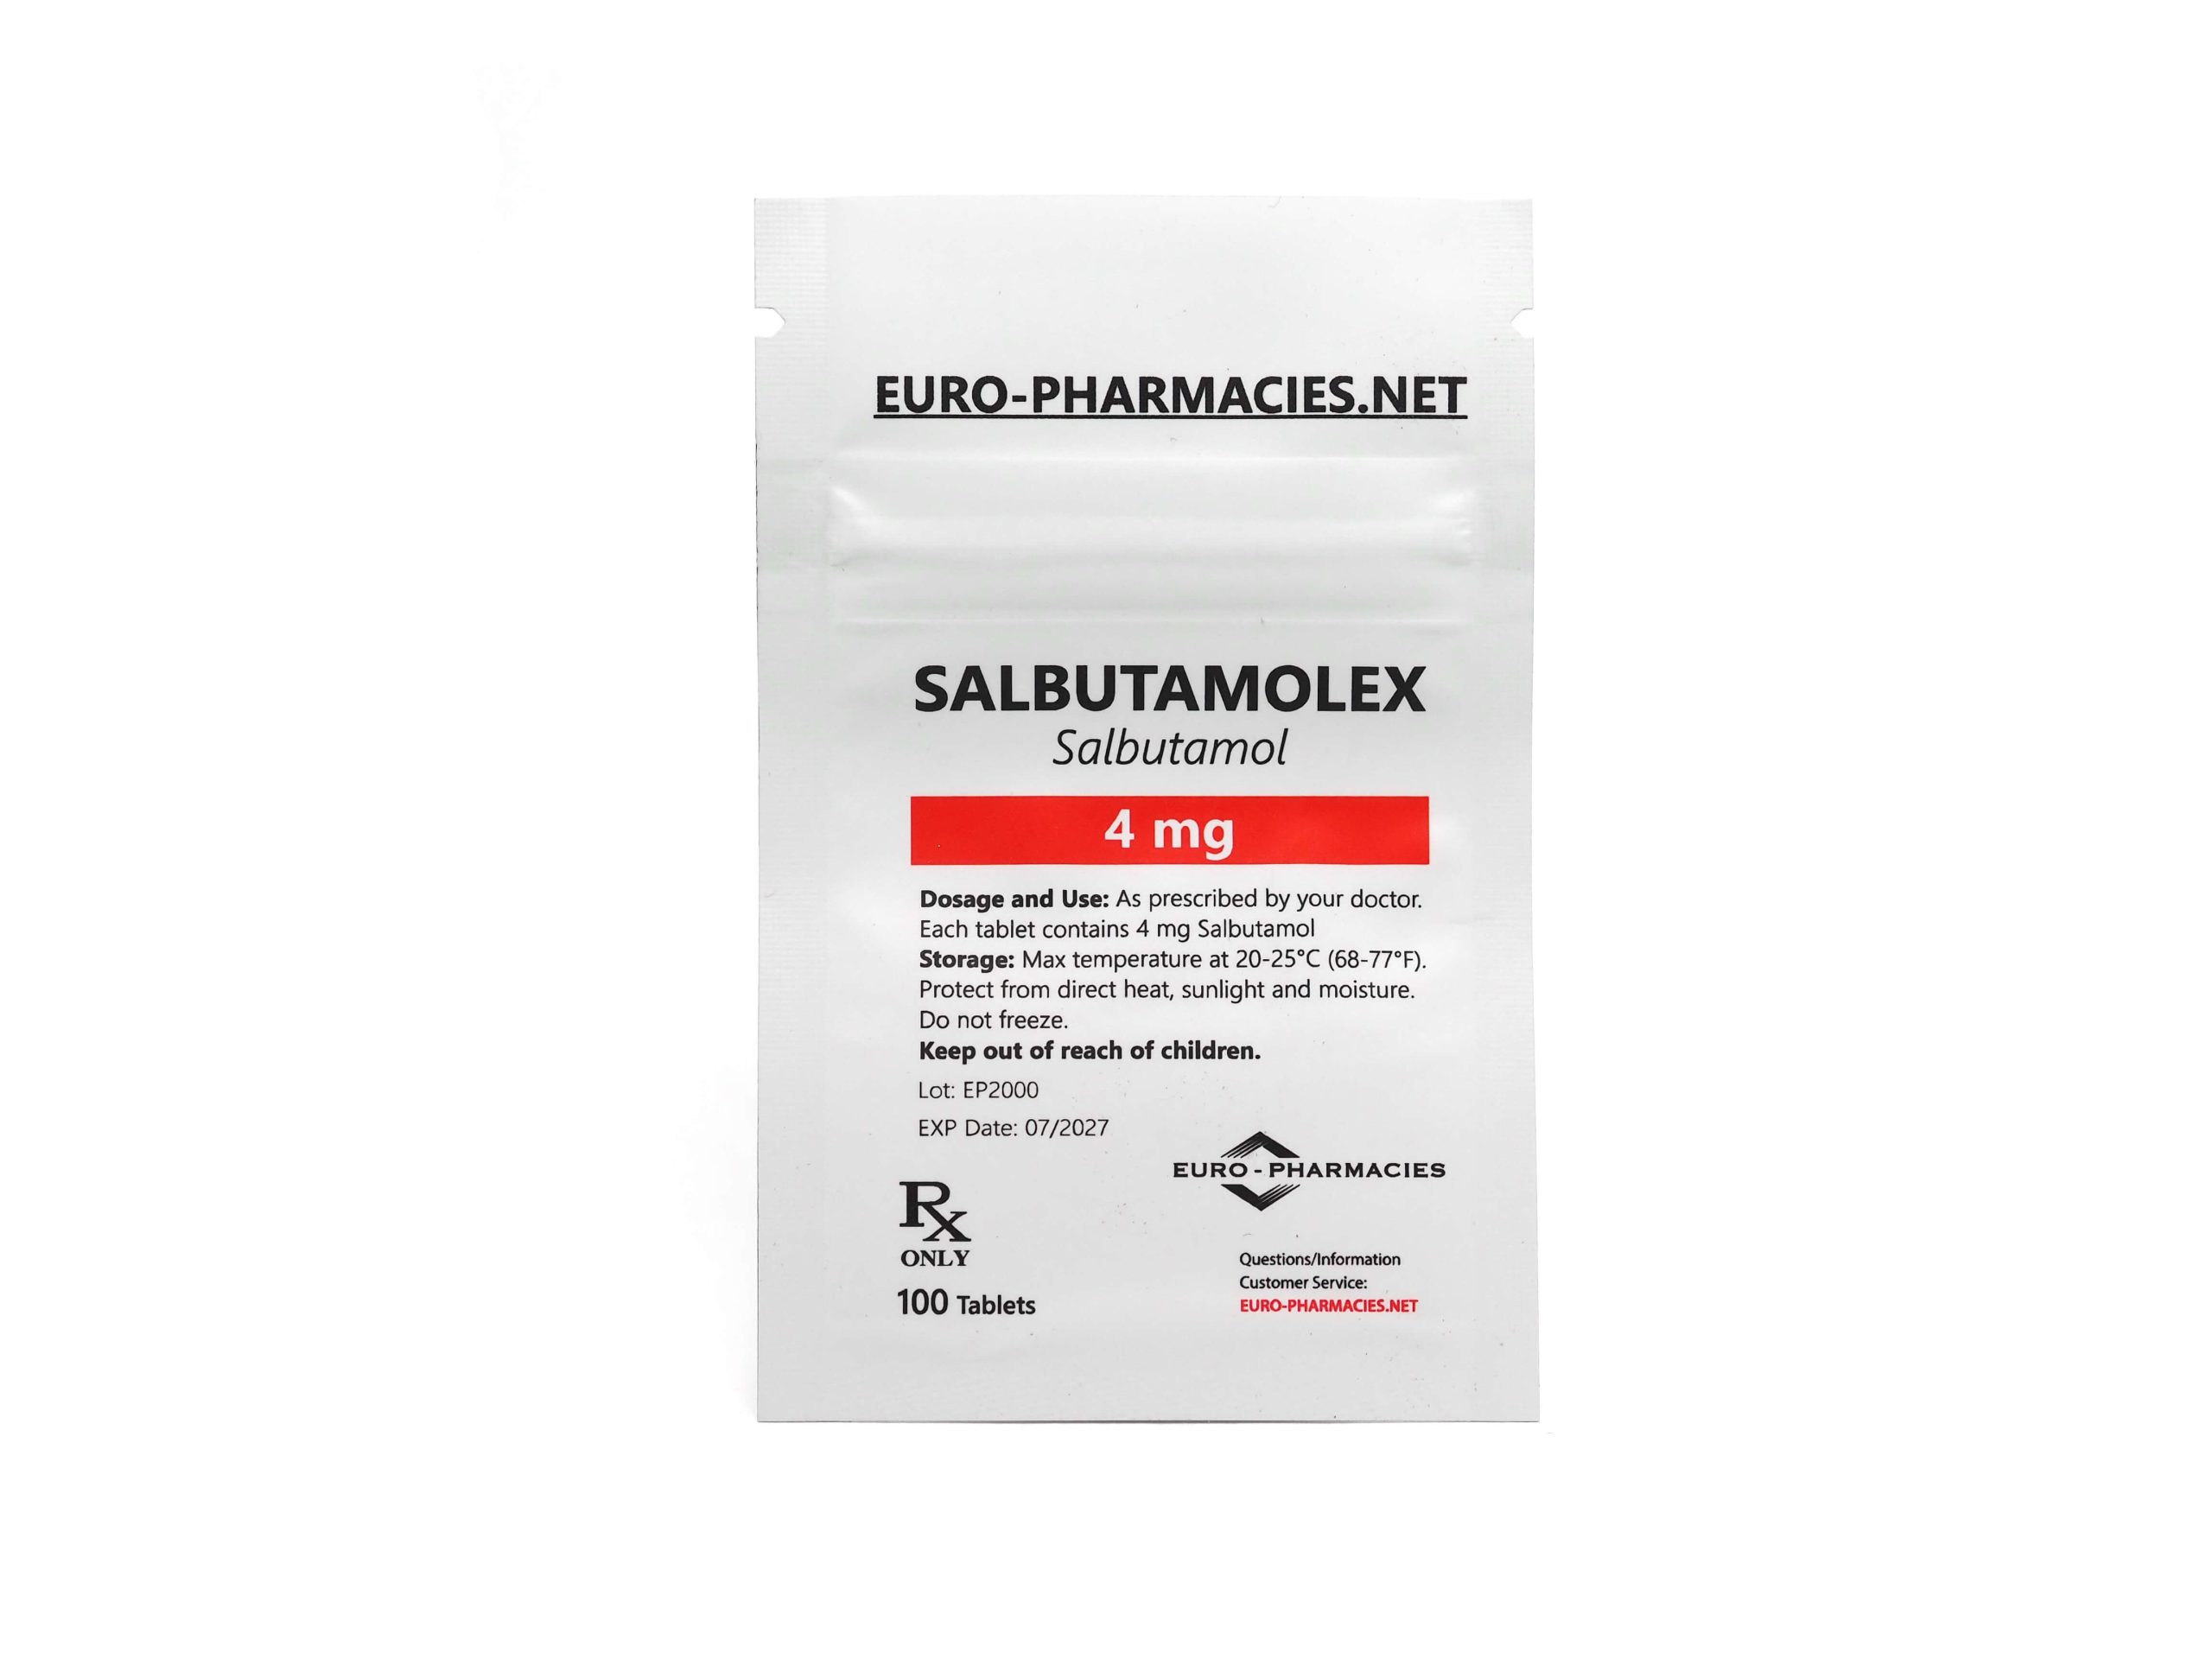 Eurofarmacias Bolsa Salbutamolex (Salbutamol)